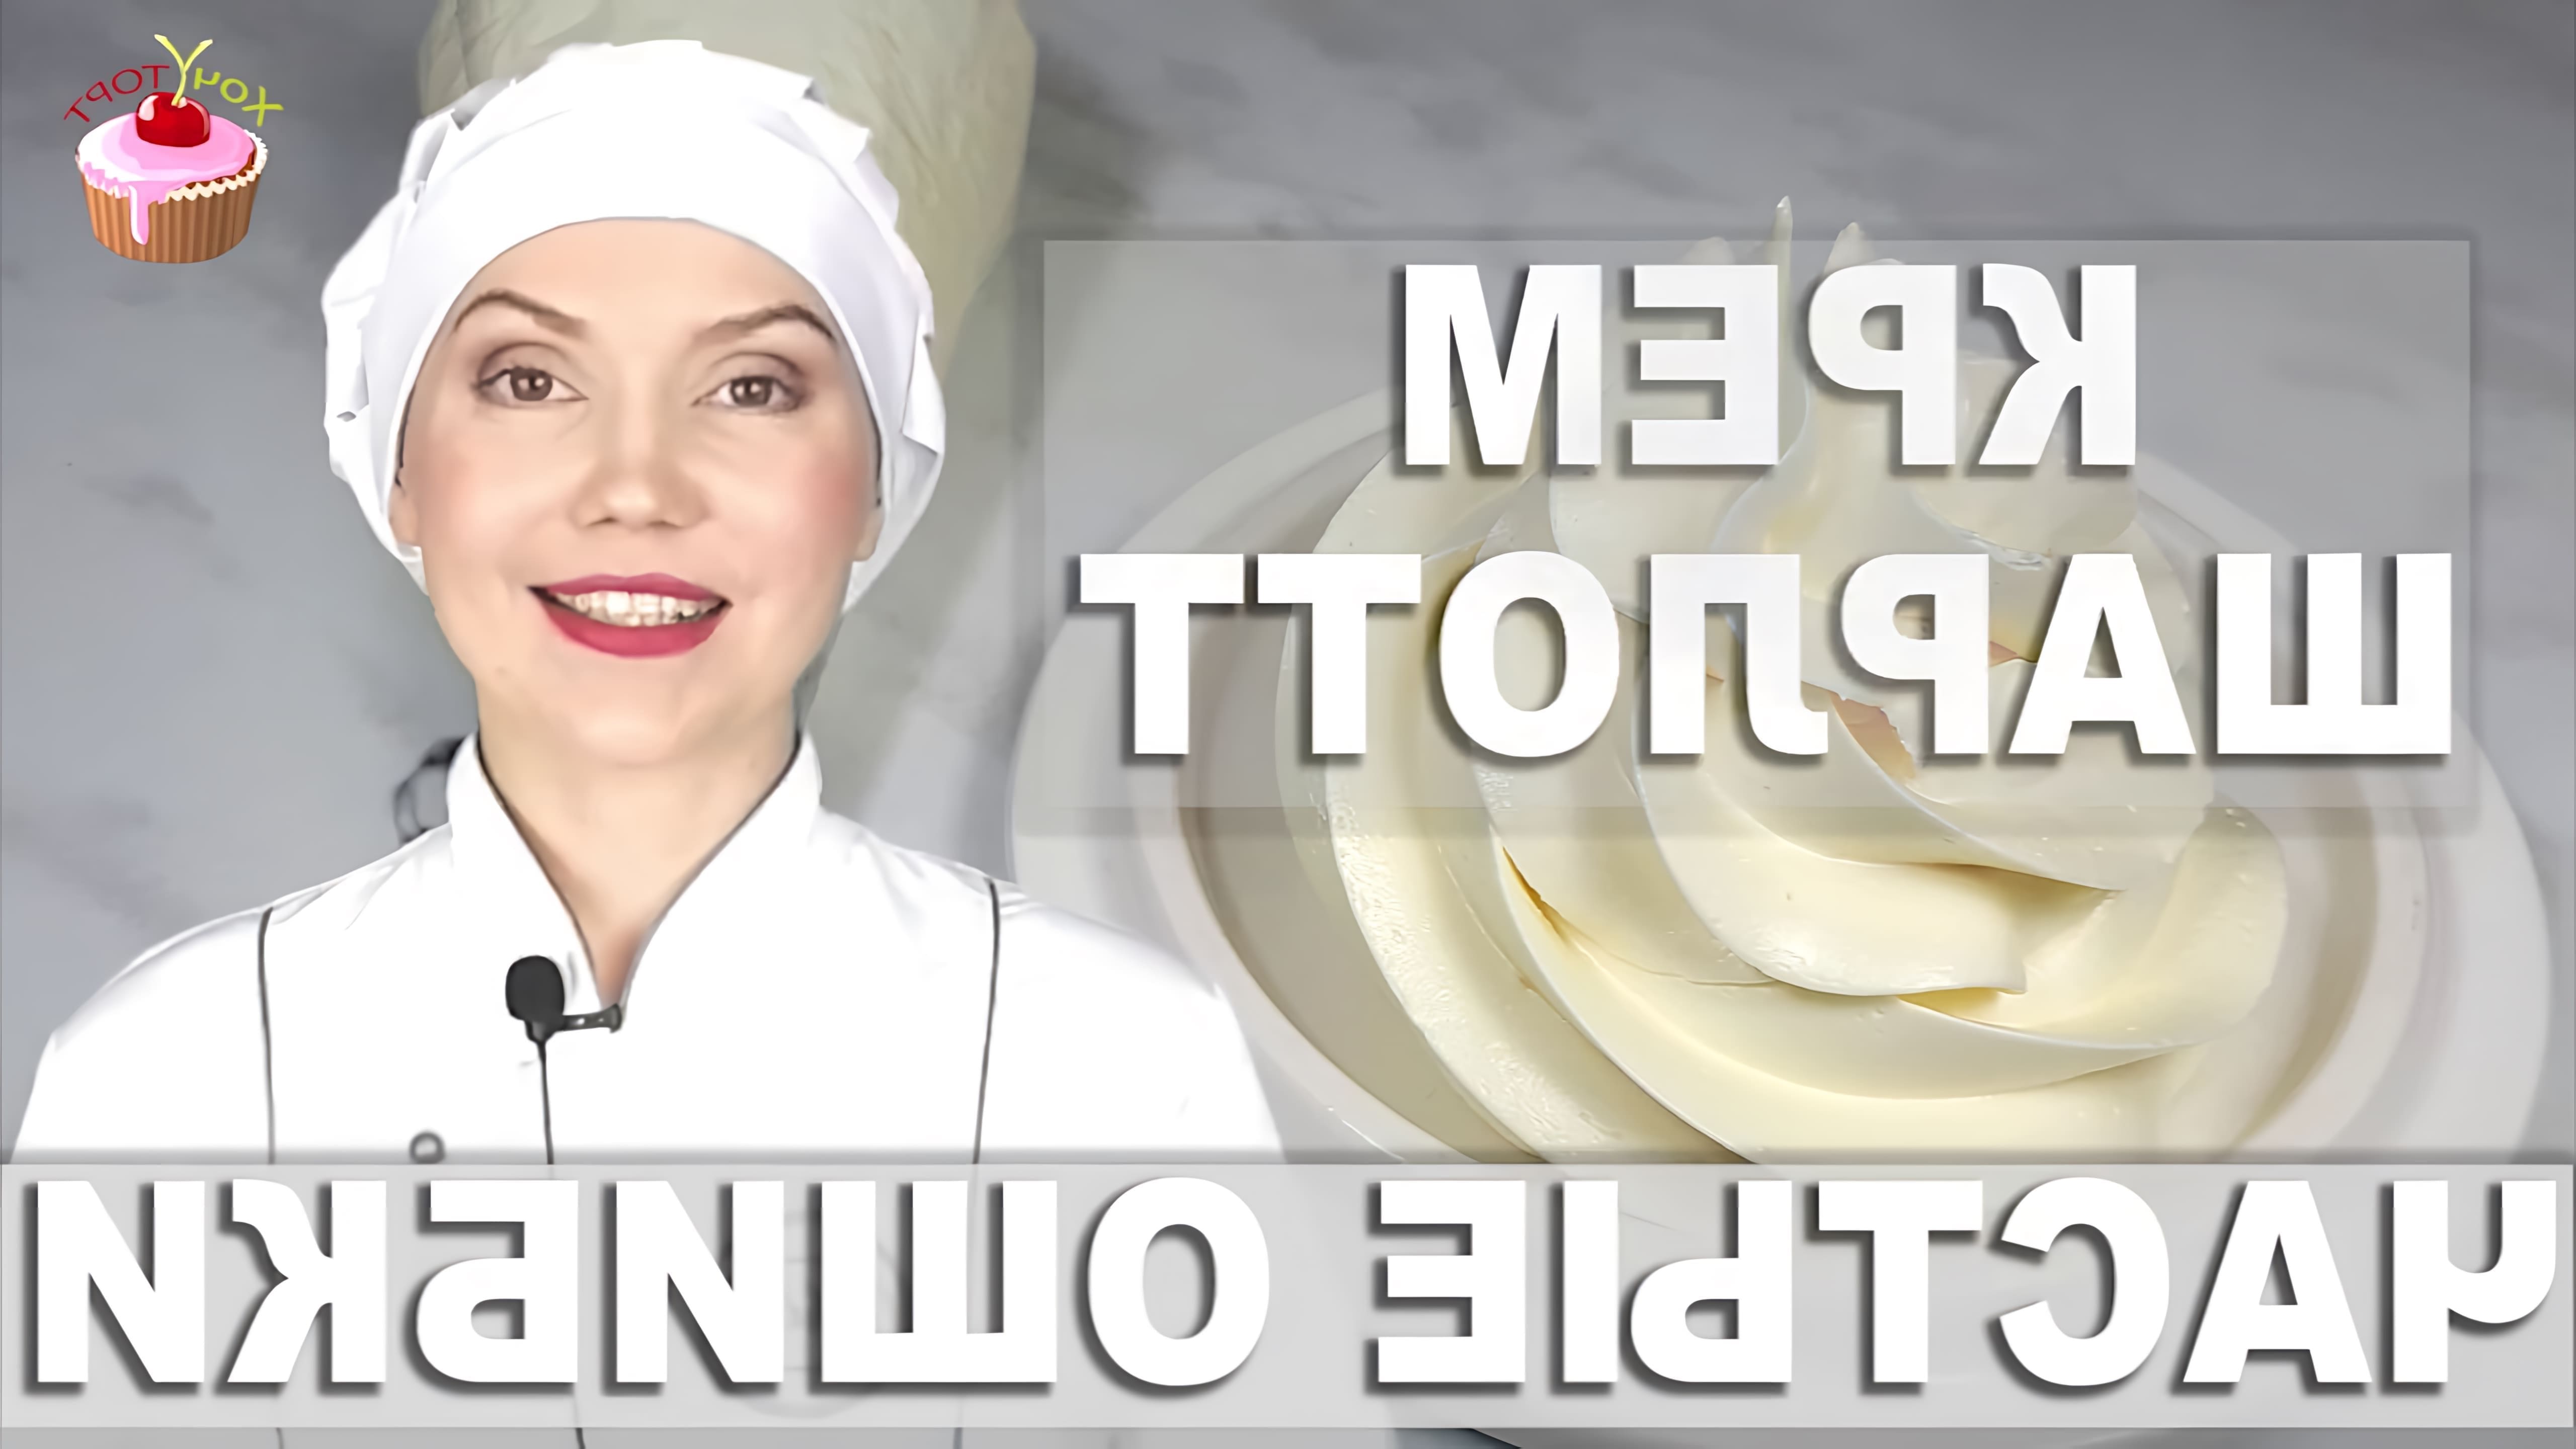 В этом видео рассказывается о приготовлении крема Шарлотт, который хорошо держит форму и подходит для украшения различных десертов